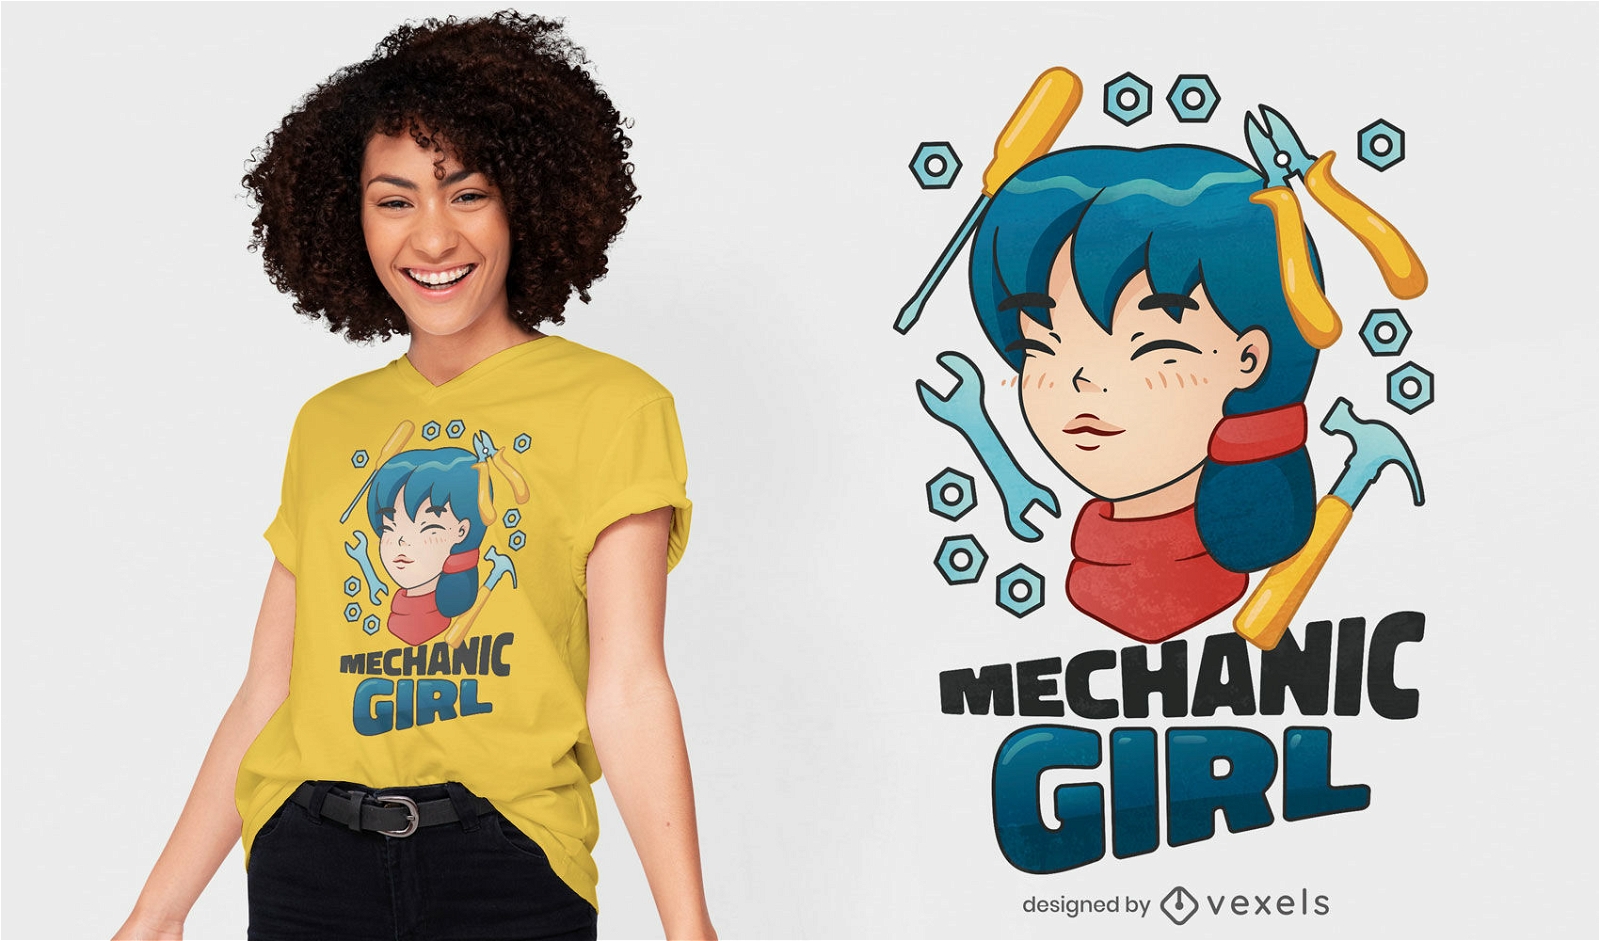 Mechanic girl japanese t-shirt design